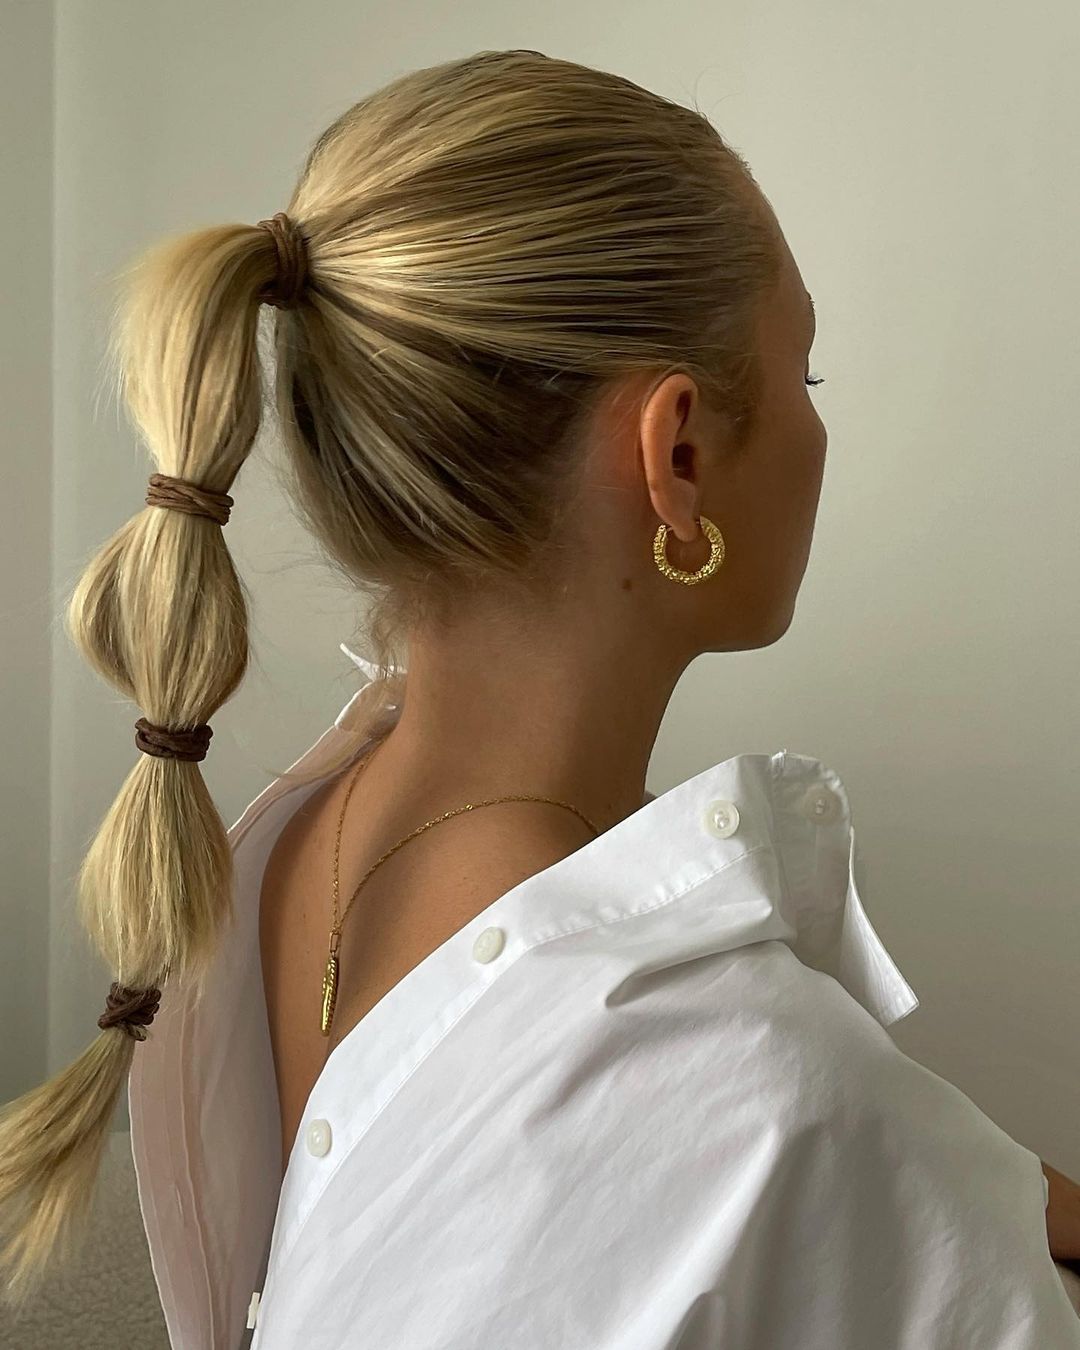 3 δροσερά ponytails, ιδανικά για το πασχαλινό σου χτένισμα